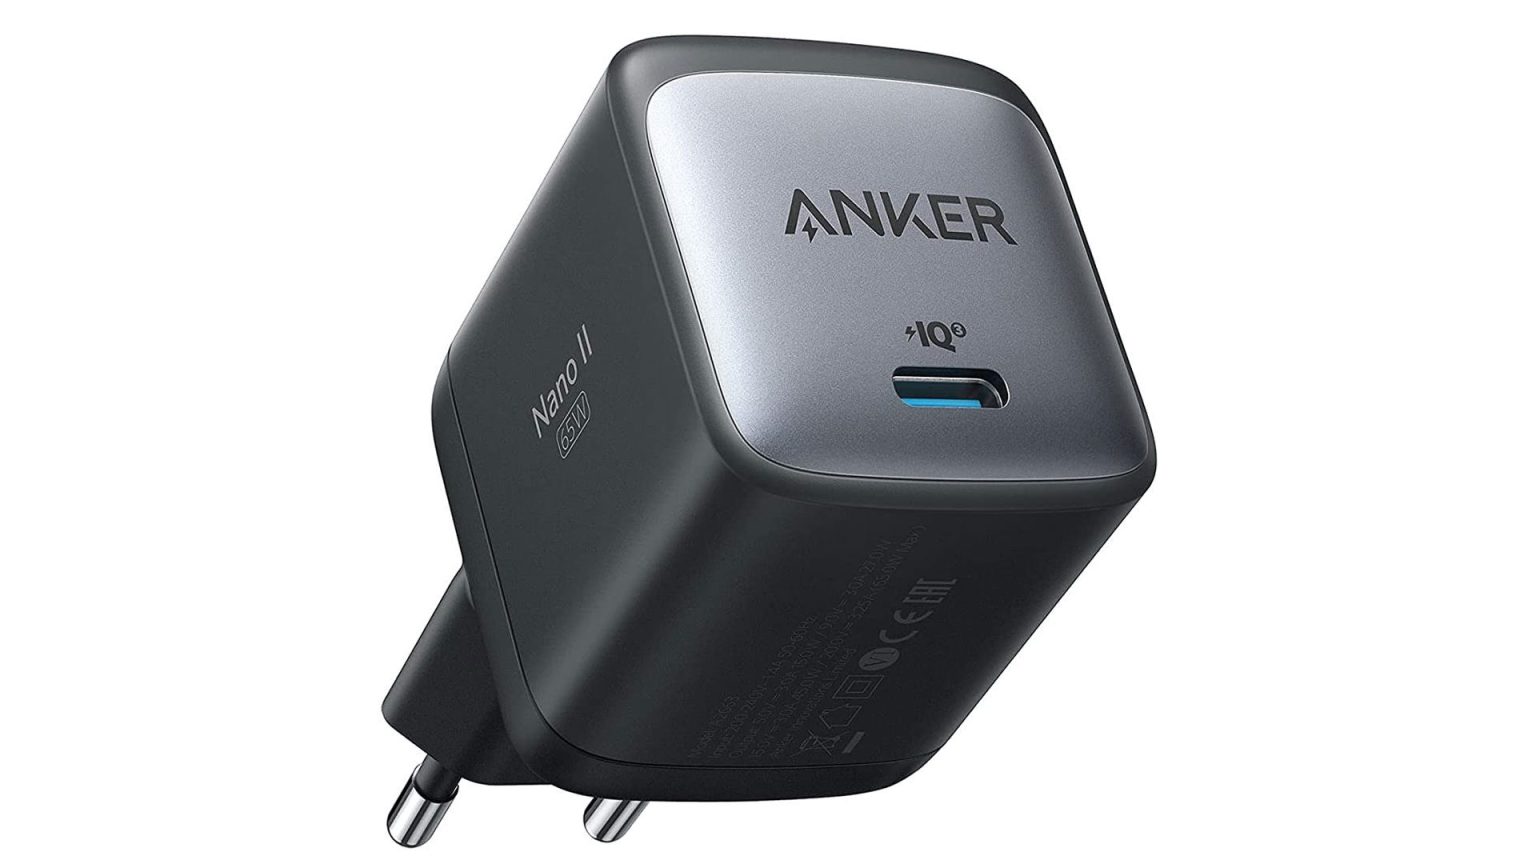 Si estás buscando un nuevo cargador de calidad o una base de carga, los productos de Anker están de oferta en Amazon.